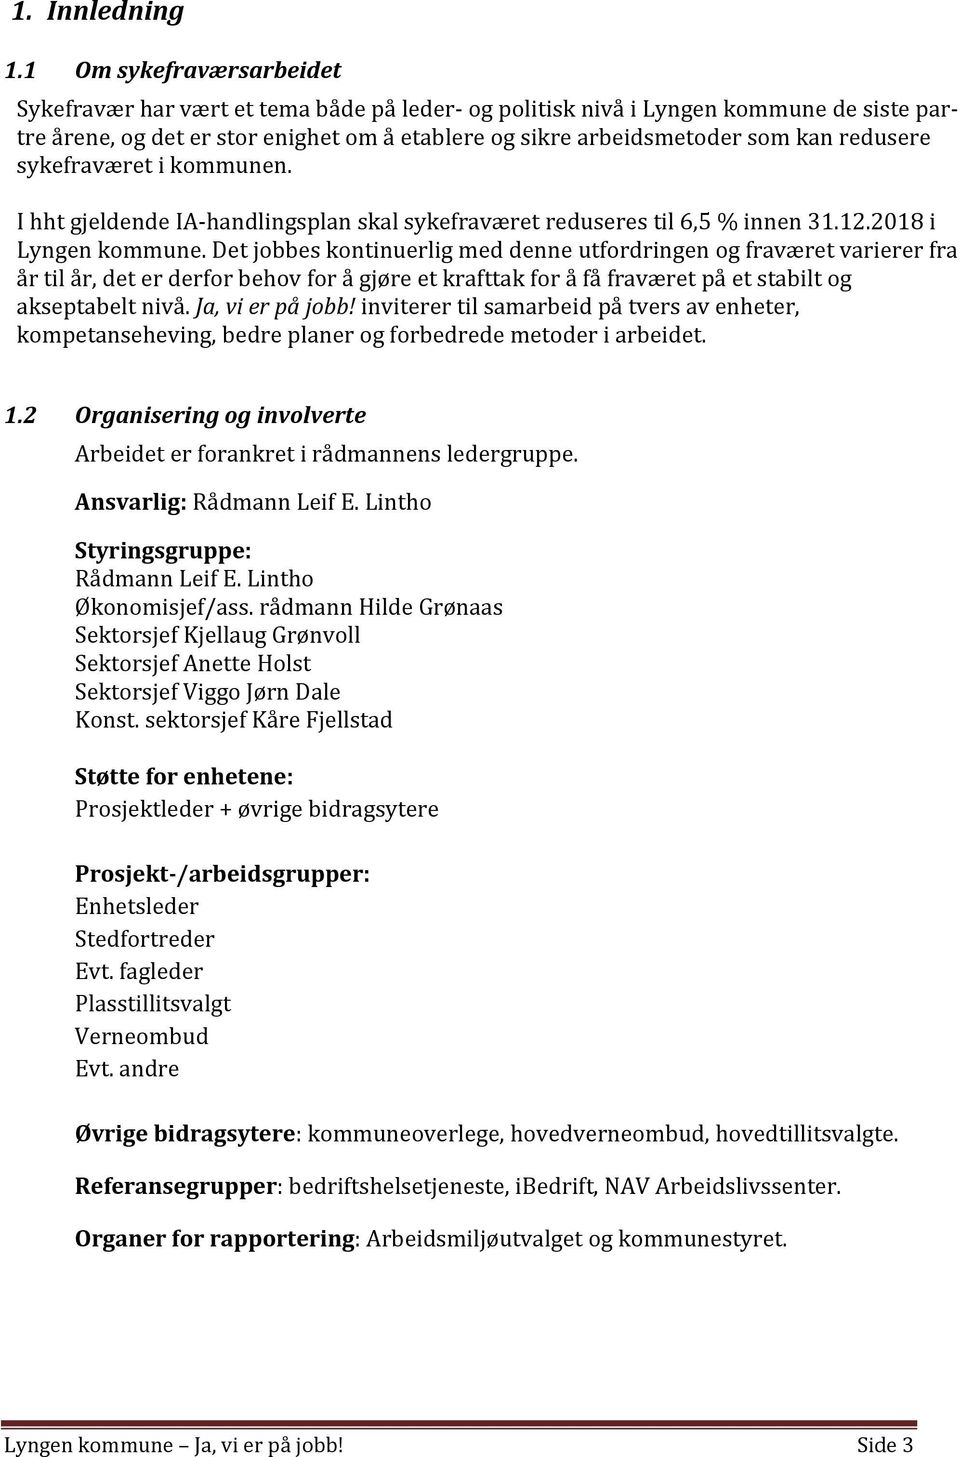 redusere sykefraværet i kommunen. I hht gjeldende IA-handlingsplan skal sykefraværet reduseres til 6,5 % innen 31.12.2018 i Lyngen kommune.